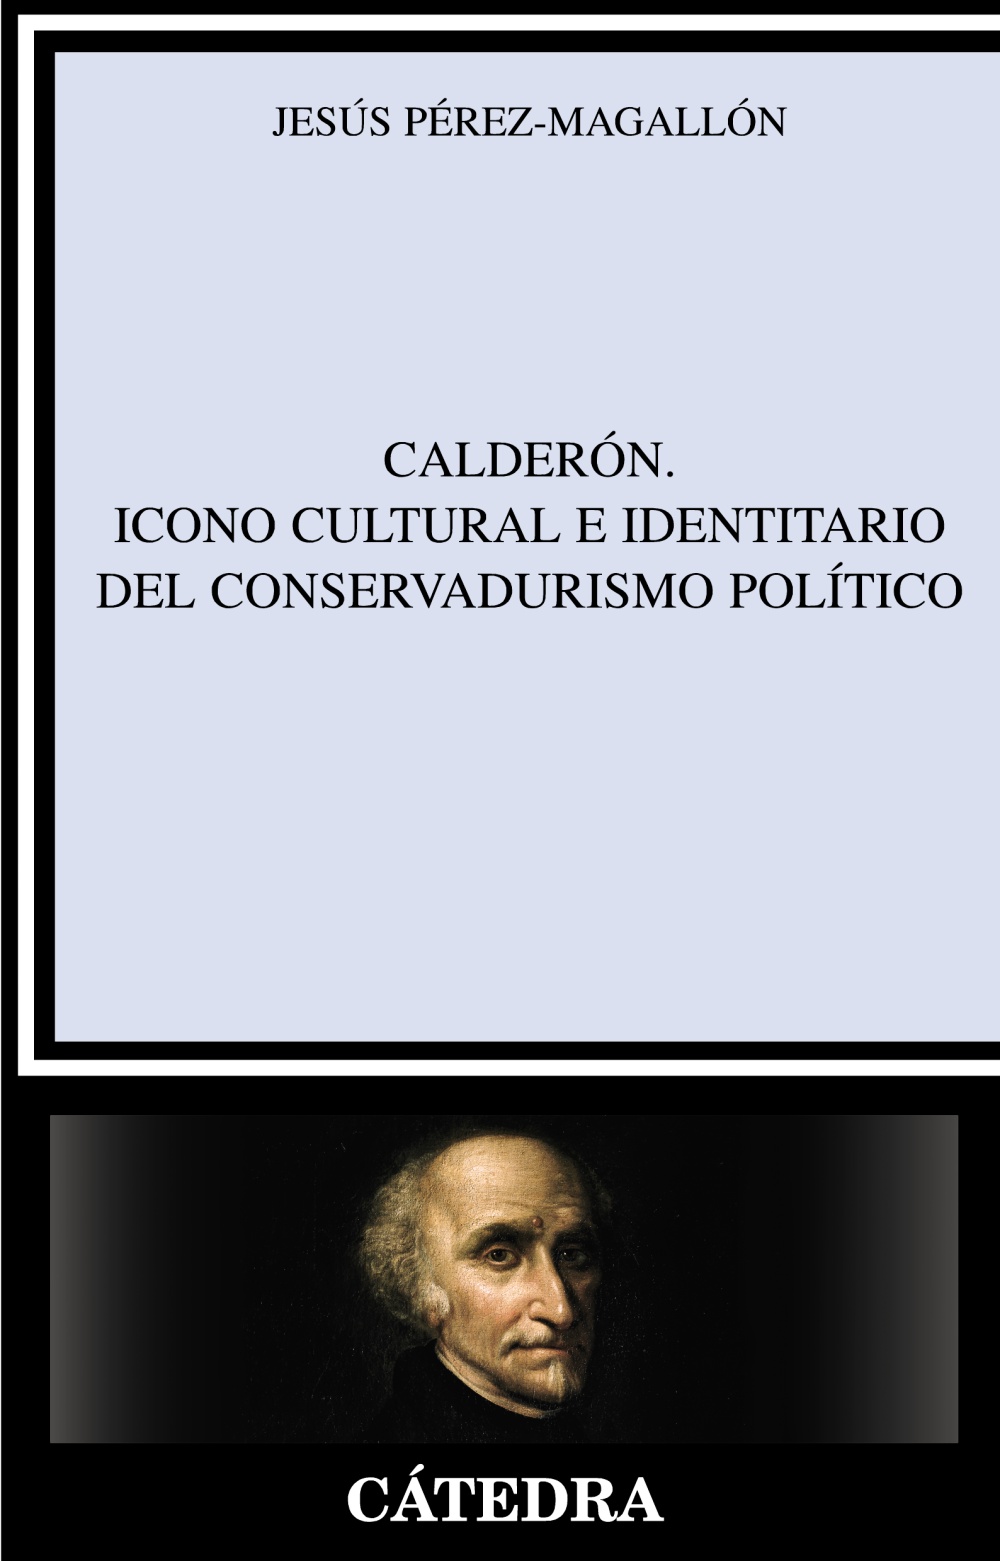 Calderón